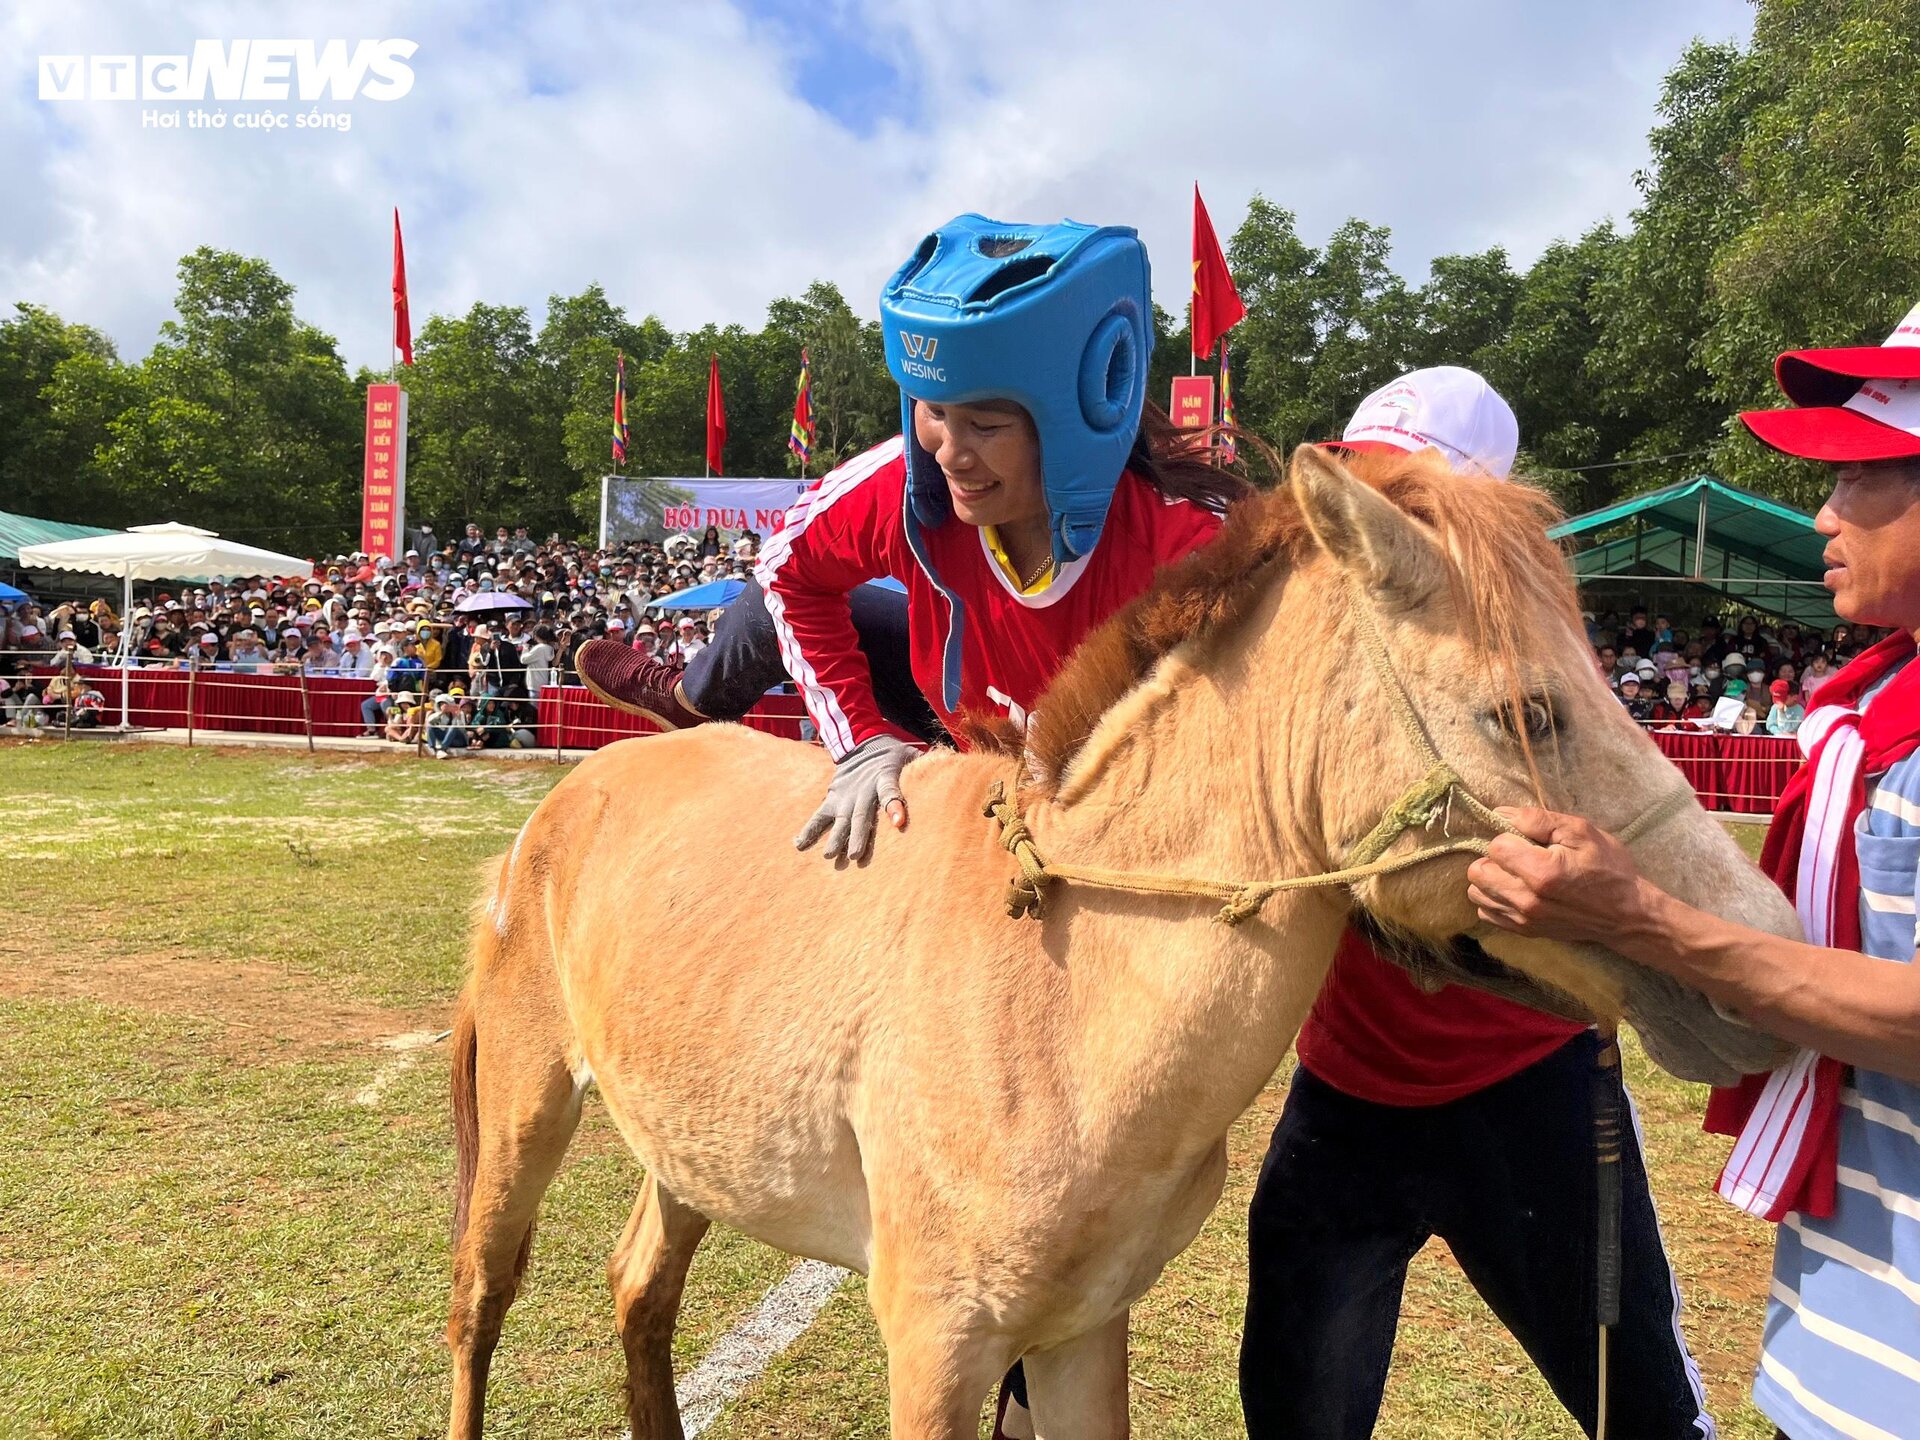 Xem nữ 'kỵ sĩ nông dân' tranh tài tại lễ hội đua ngựa độc nhất vô nhị Phú Yên - 5